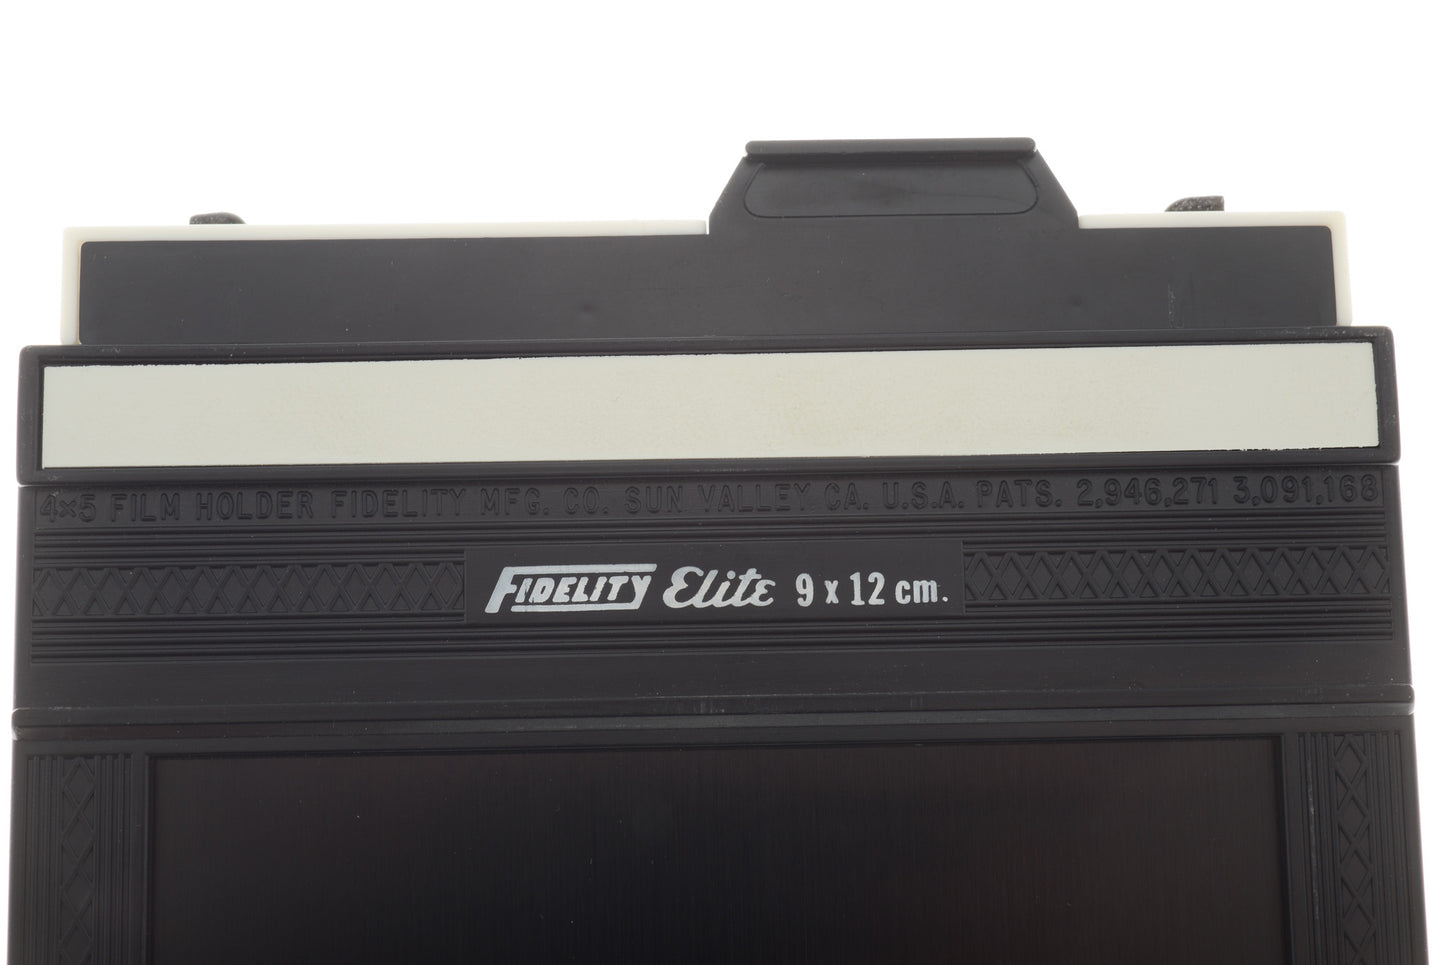 Fidelity Elite 9x12cm Cut Film Holder